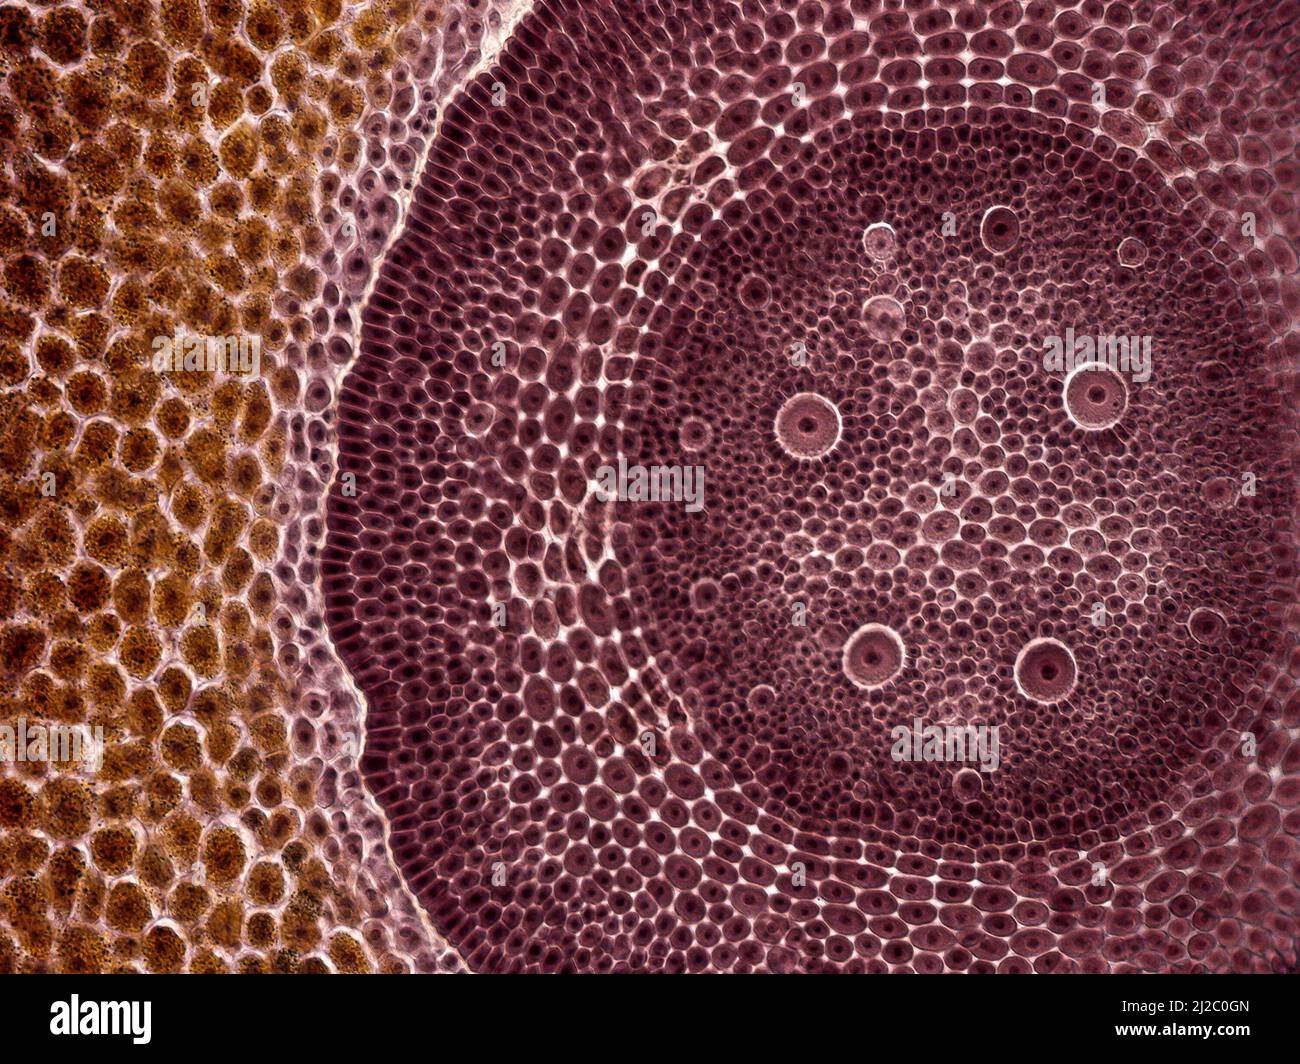 Maiskörner. Ein Interessantes Foto, das mit einem Mikroskop aufgenommen wurde. Querschnitt durch Maiskörner (Zea mays). Stockfoto